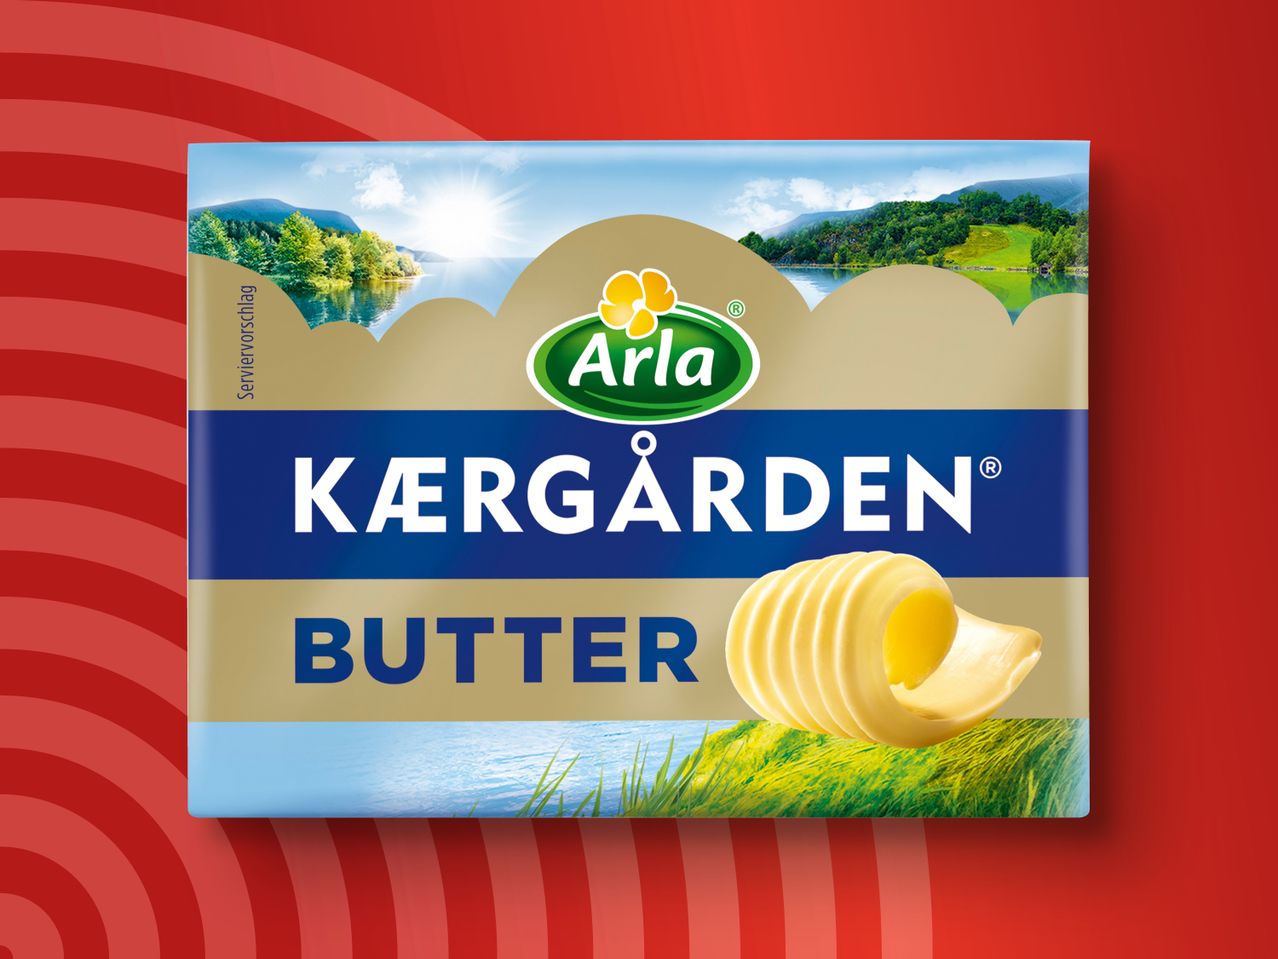 Kaergarden Butter Arla